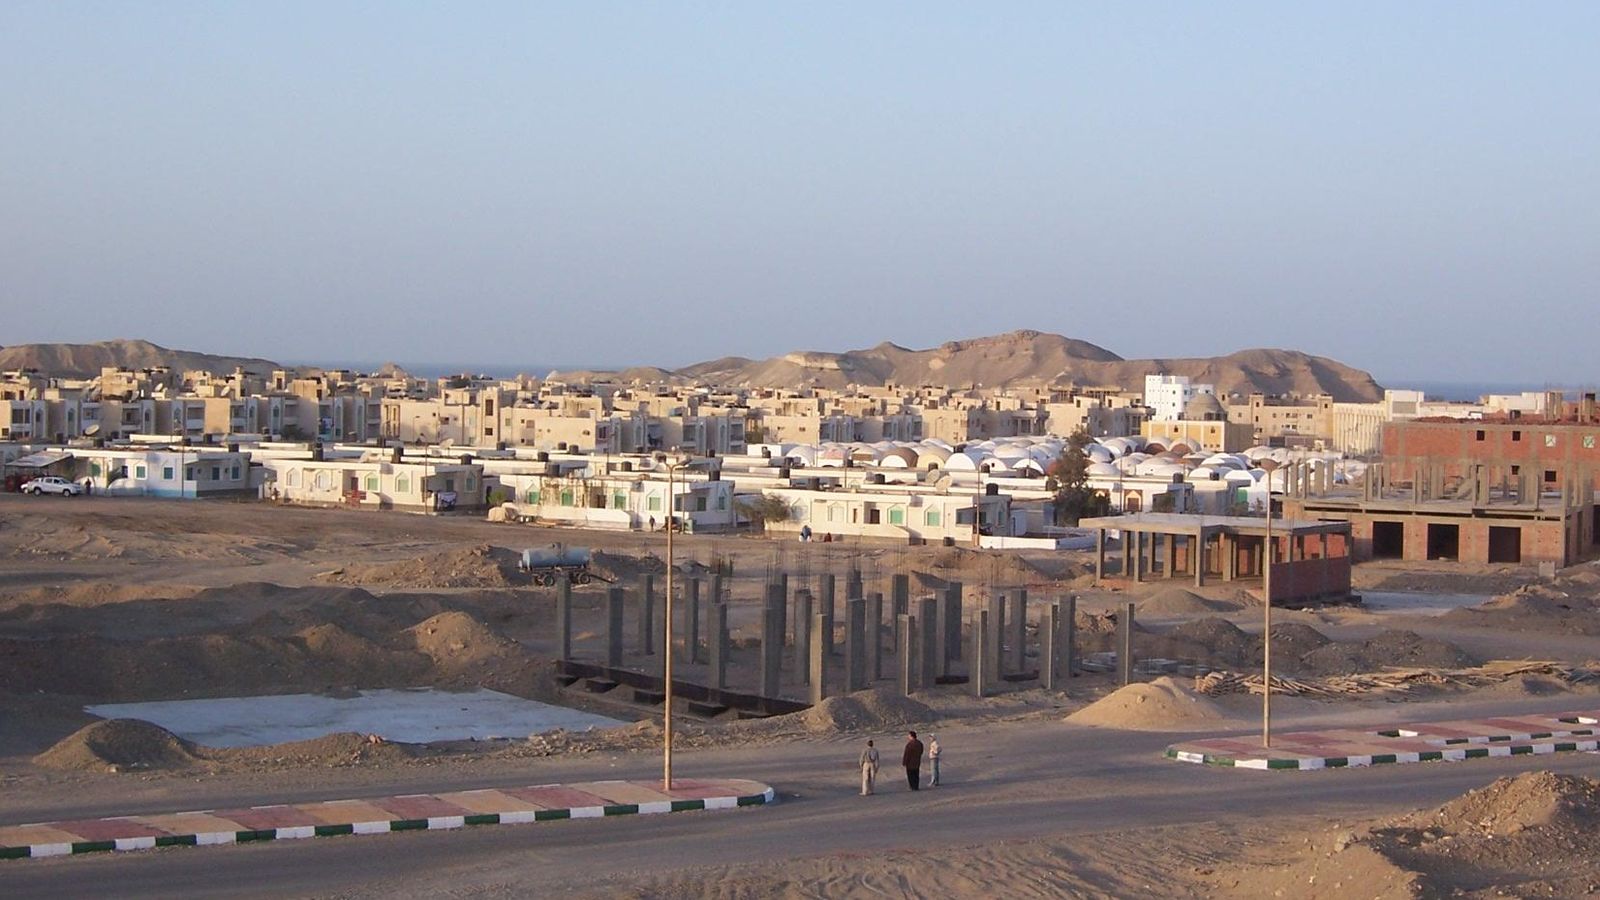 Foto: Marsa Alam, una pequeña localidad de 10.000 habitantes con su propio aeropuerto internacional. (CC/Daniel Csörföly)